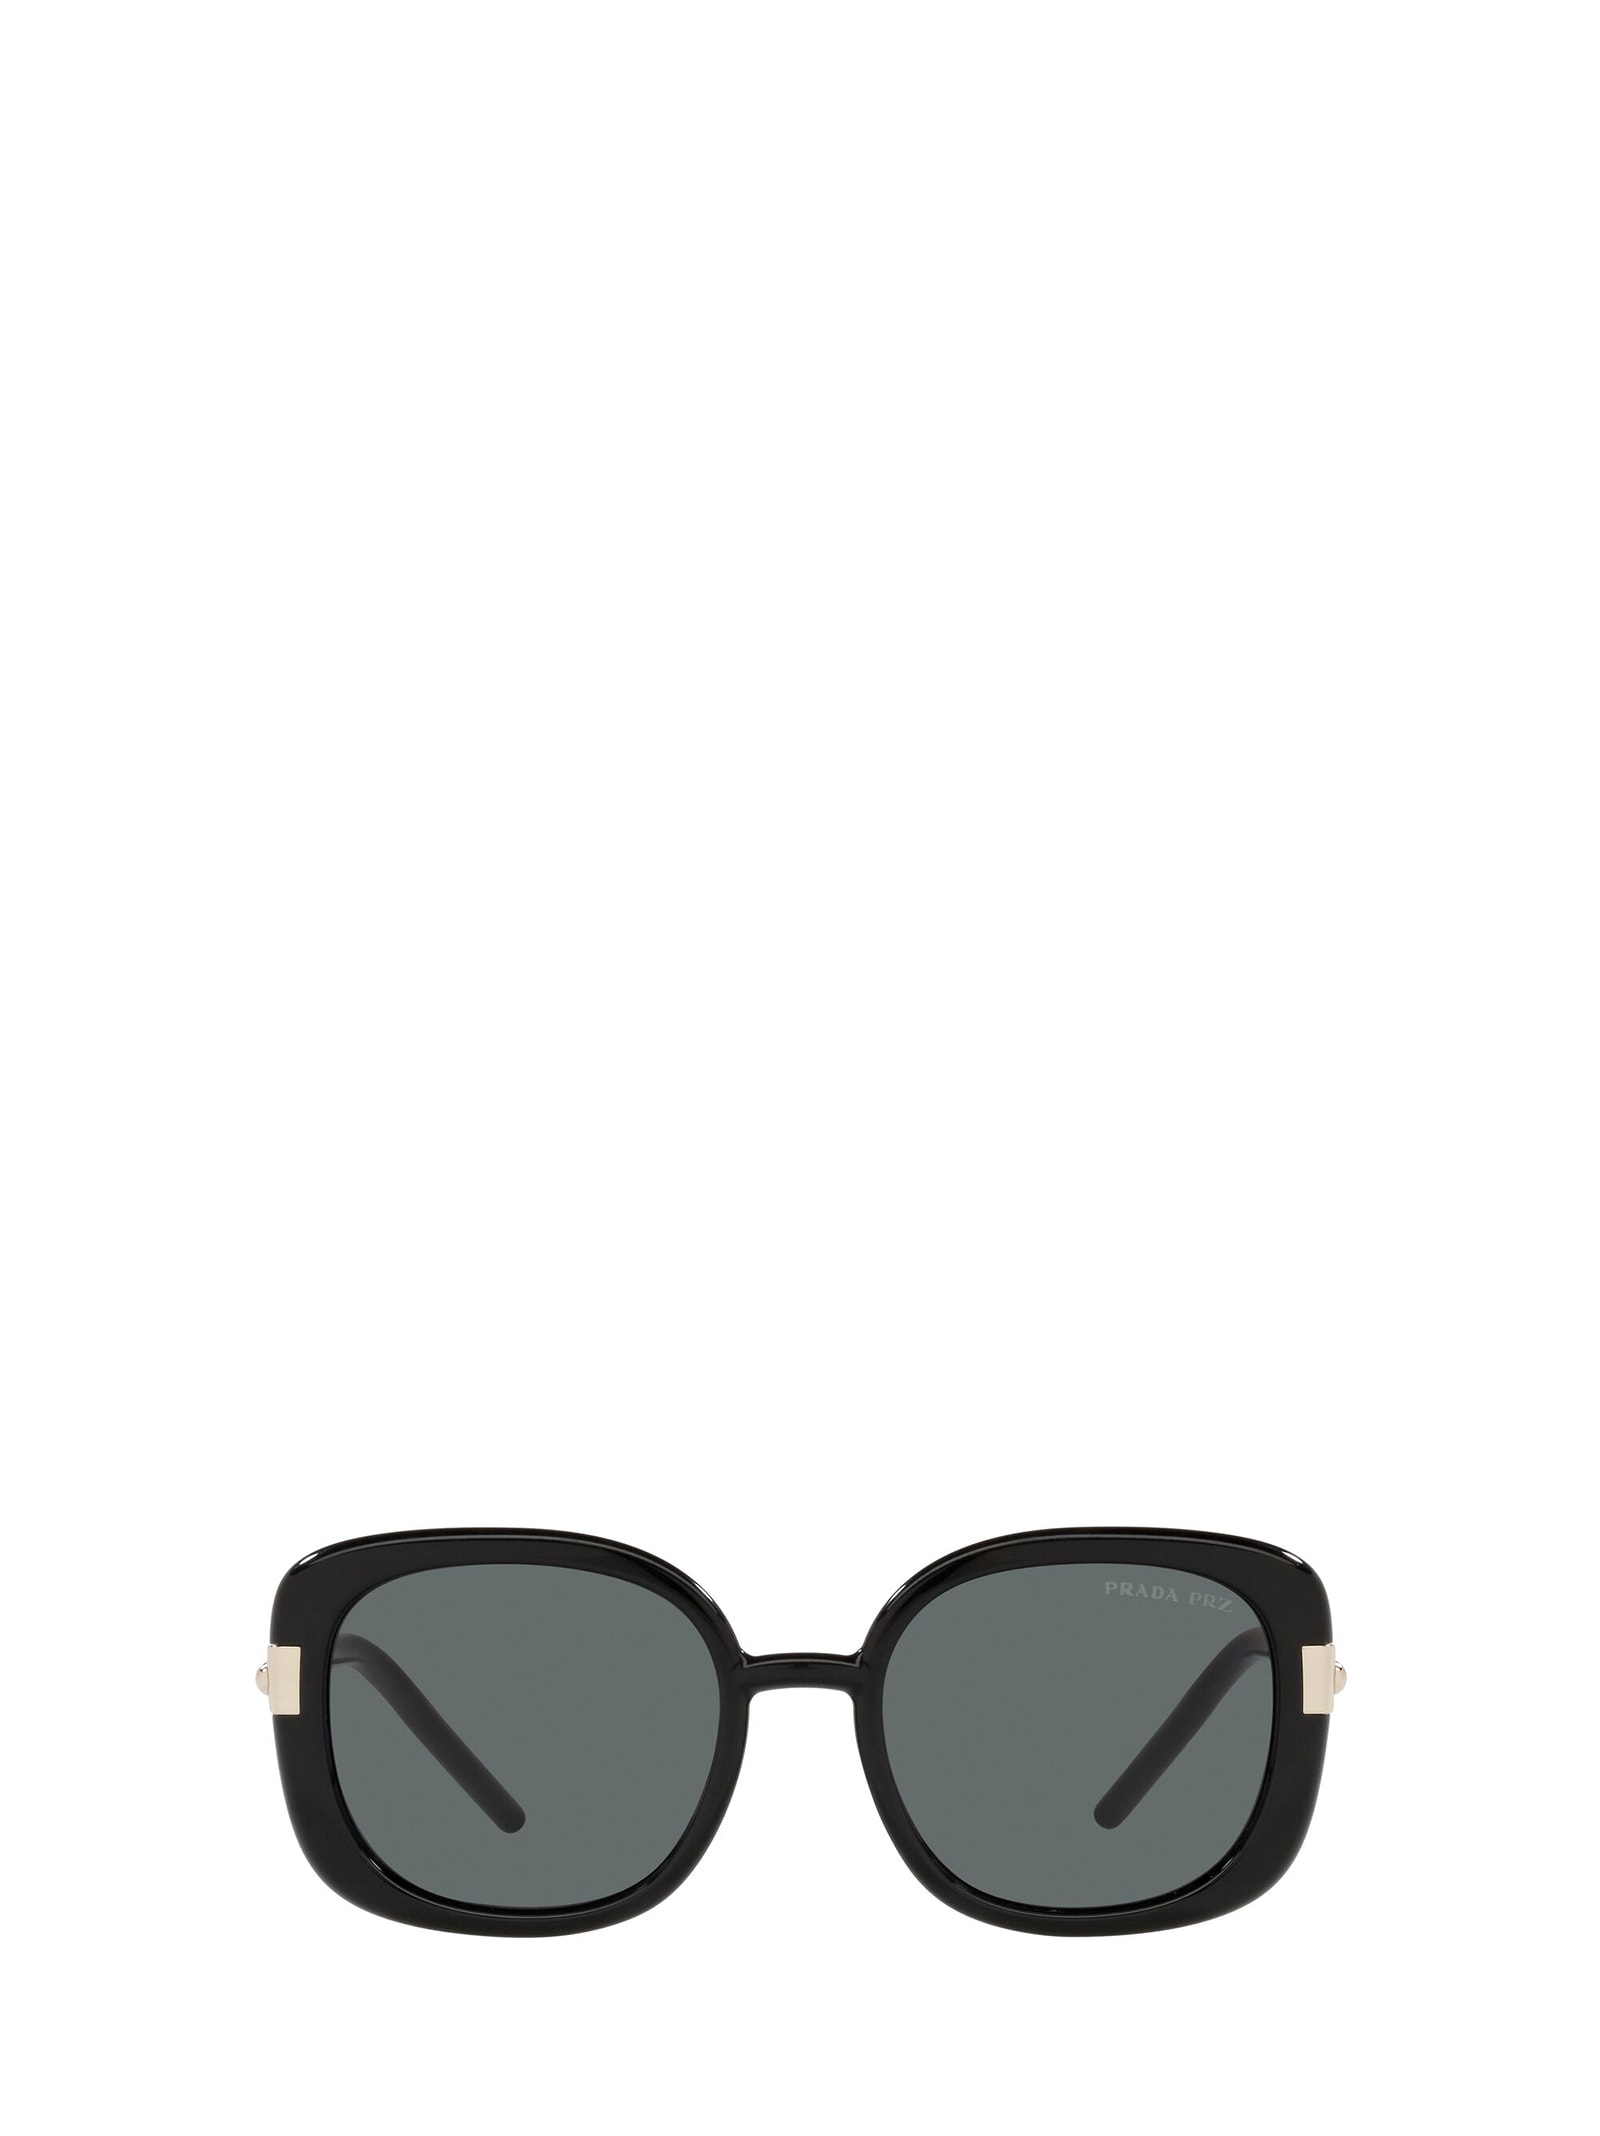 Prada Prada Pr 04ws Black Sunglasses